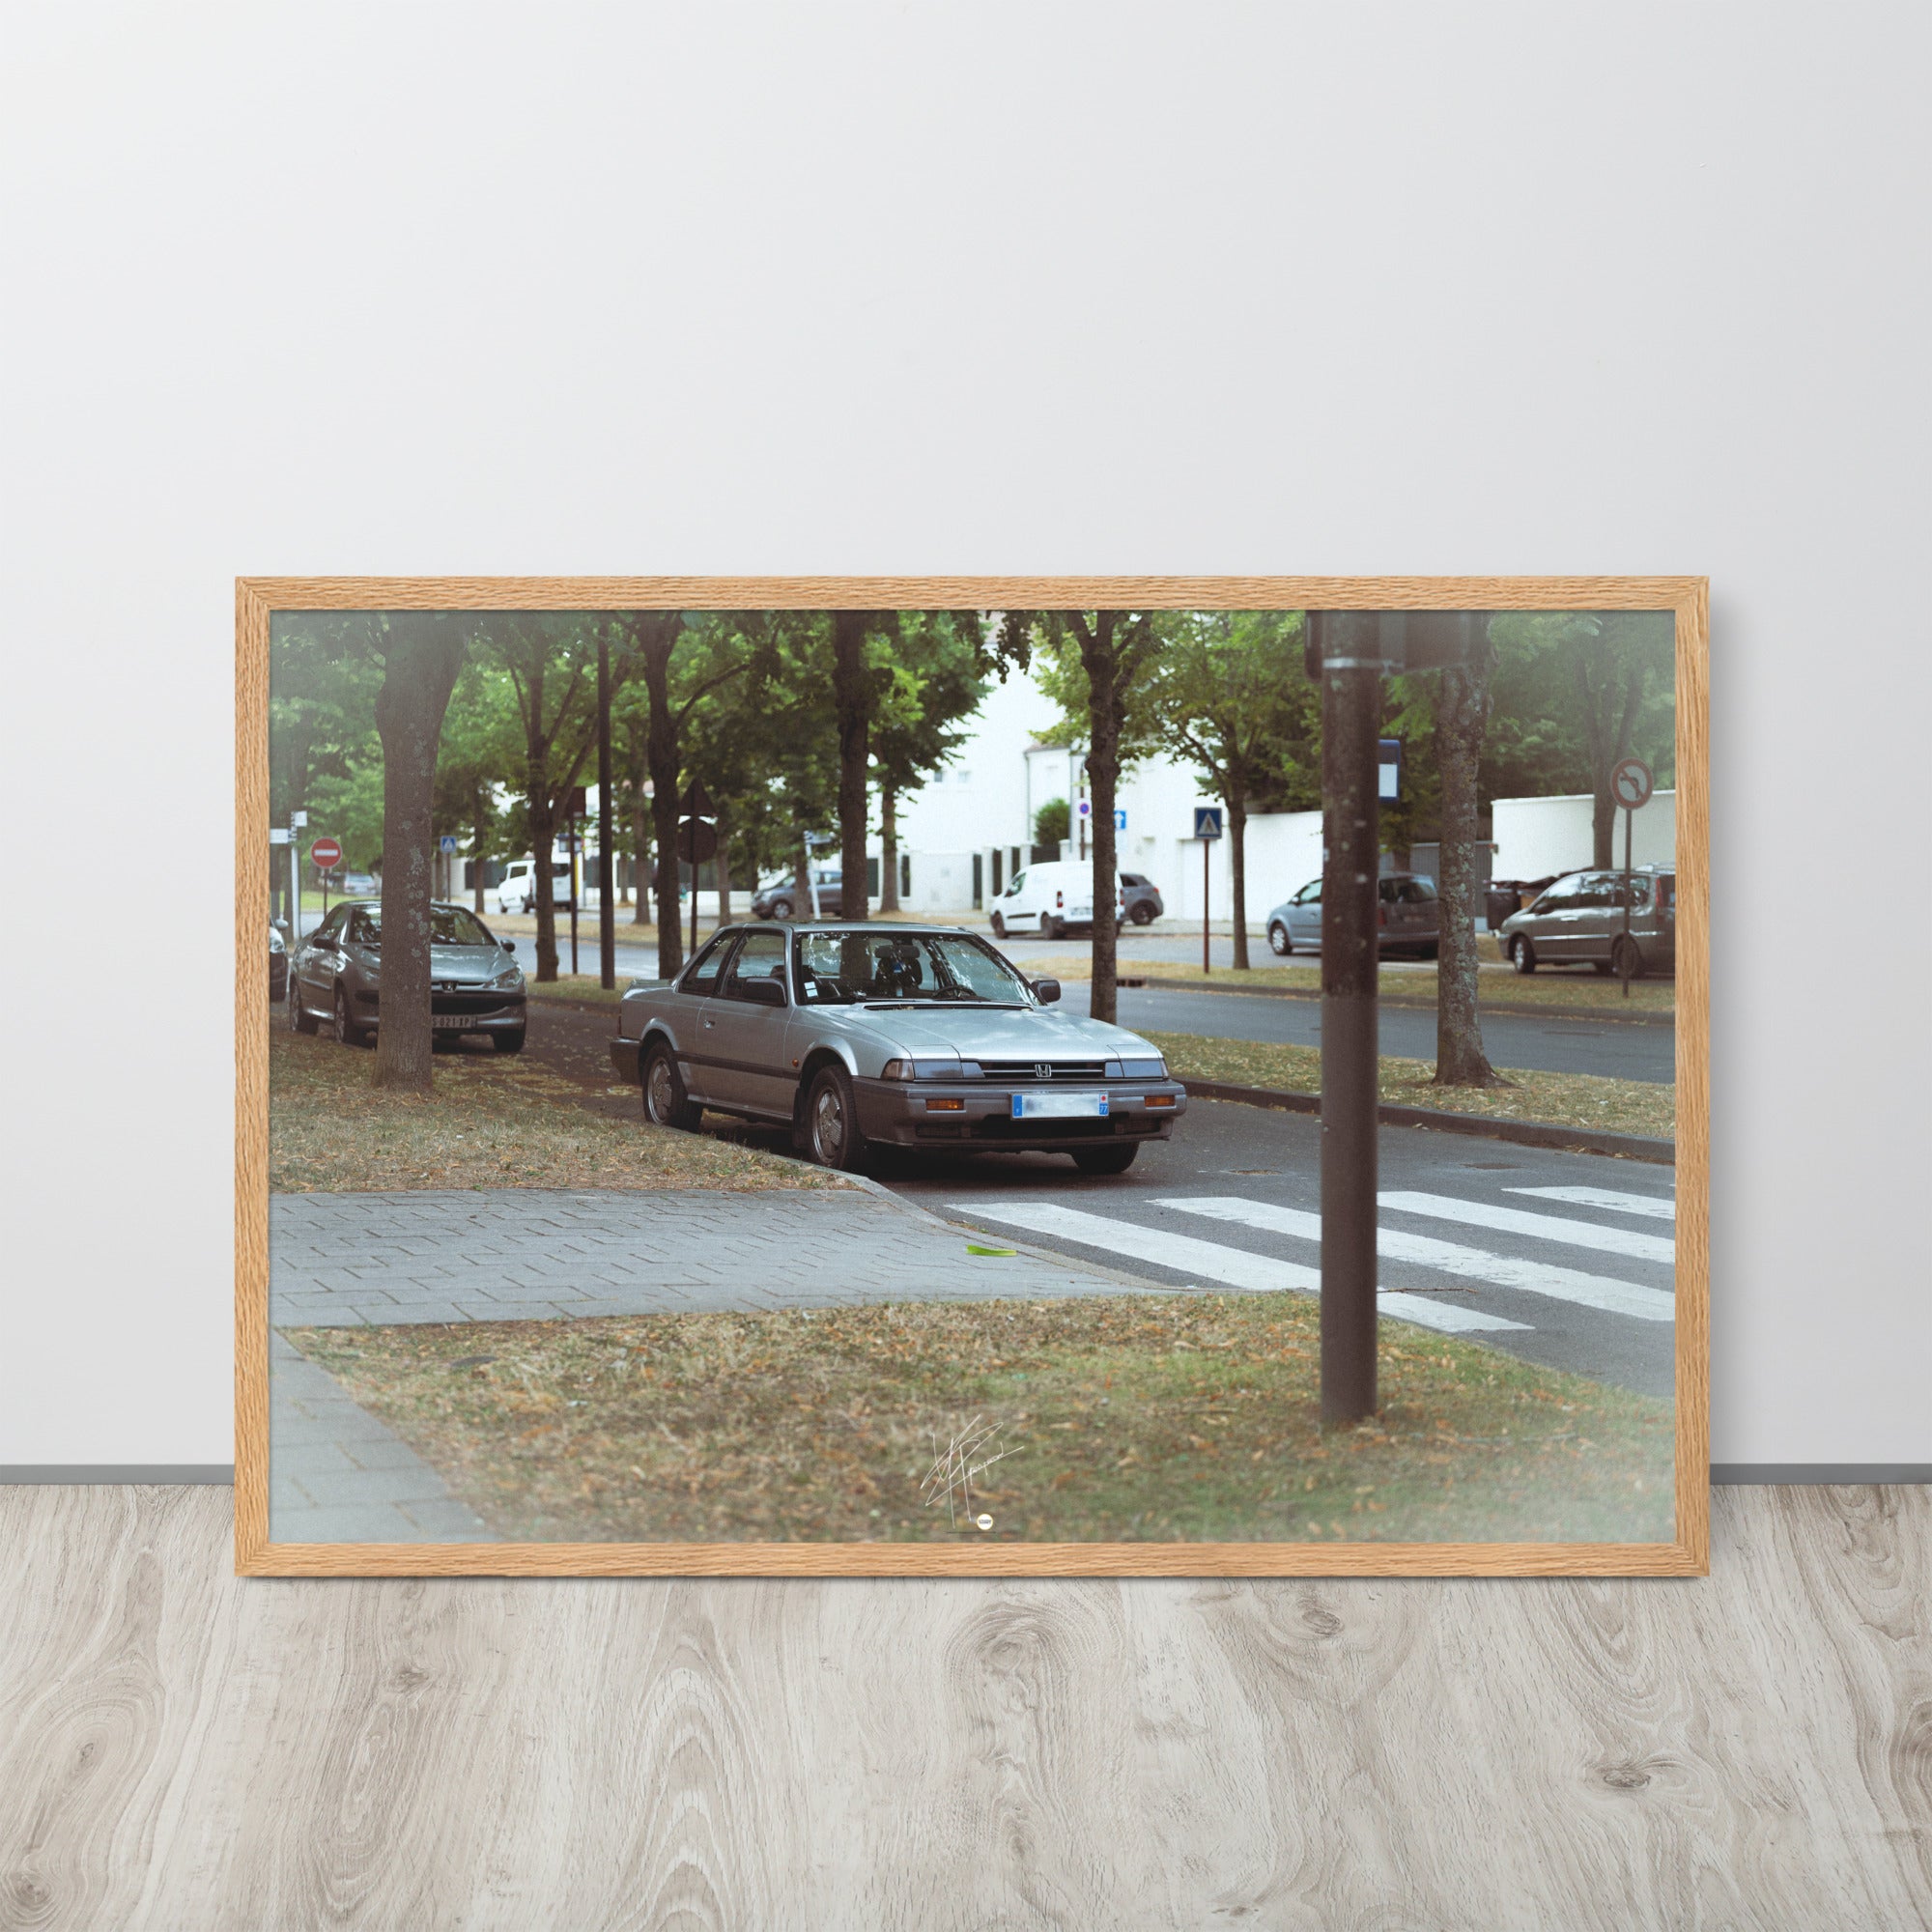 Photographie du classique automobile Honda Prelude, stationnée dans les rues du 78, dépeignant l'élégance et le charme de la période rétro de l'automobile.